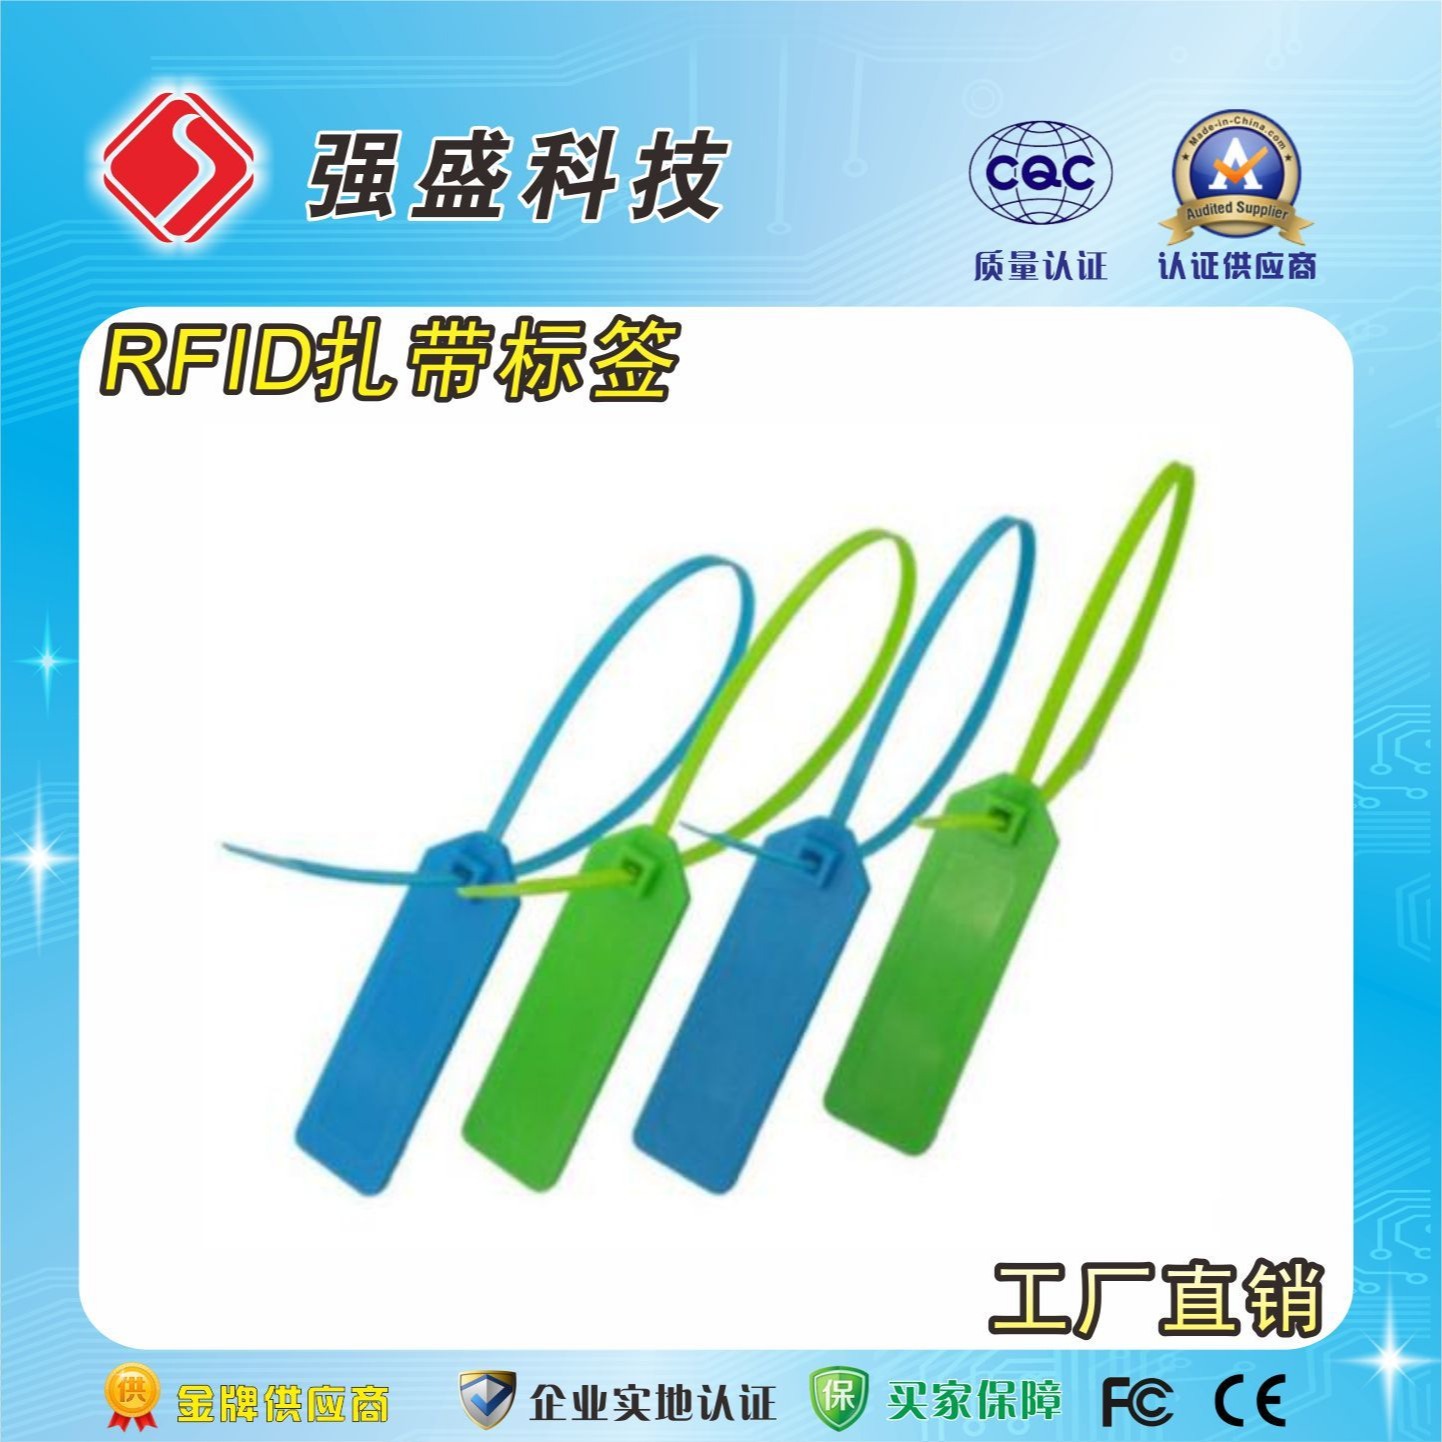 厂家供应超高频电子标签 RFID塑料封条 一次性扎带标签集装箱图片